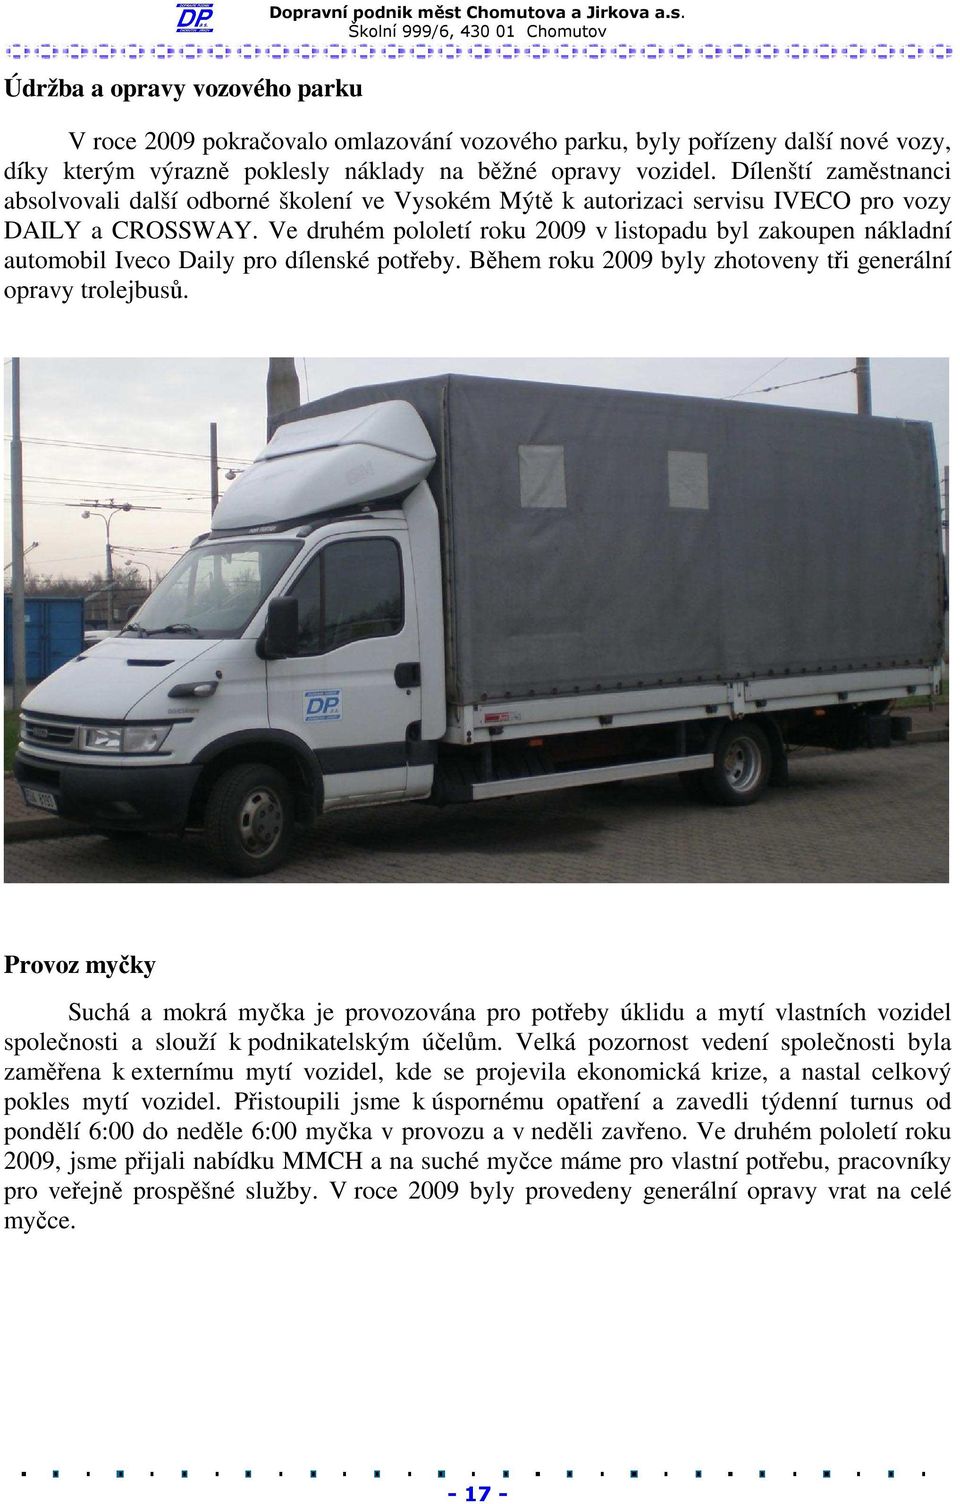 Ve druhém pololetí roku 2009 v listopadu byl zakoupen nákladní automobil Iveco Daily pro dílenské potřeby. Během roku 2009 byly zhotoveny tři generální opravy trolejbusů.